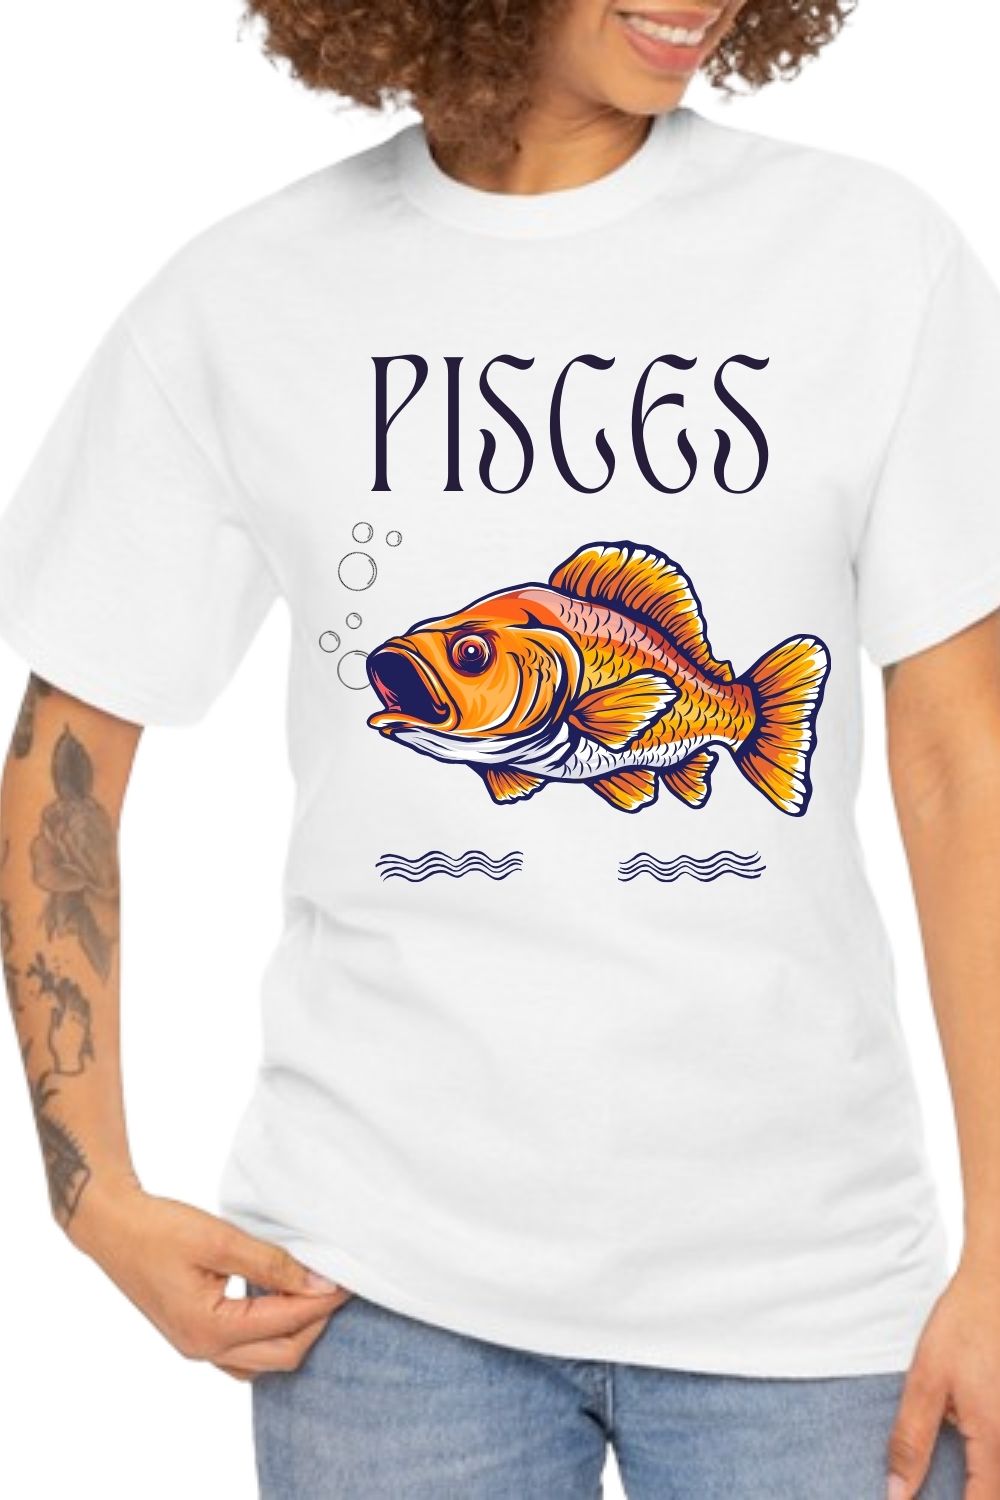 Pisces t-shirt design pinterest preview image.